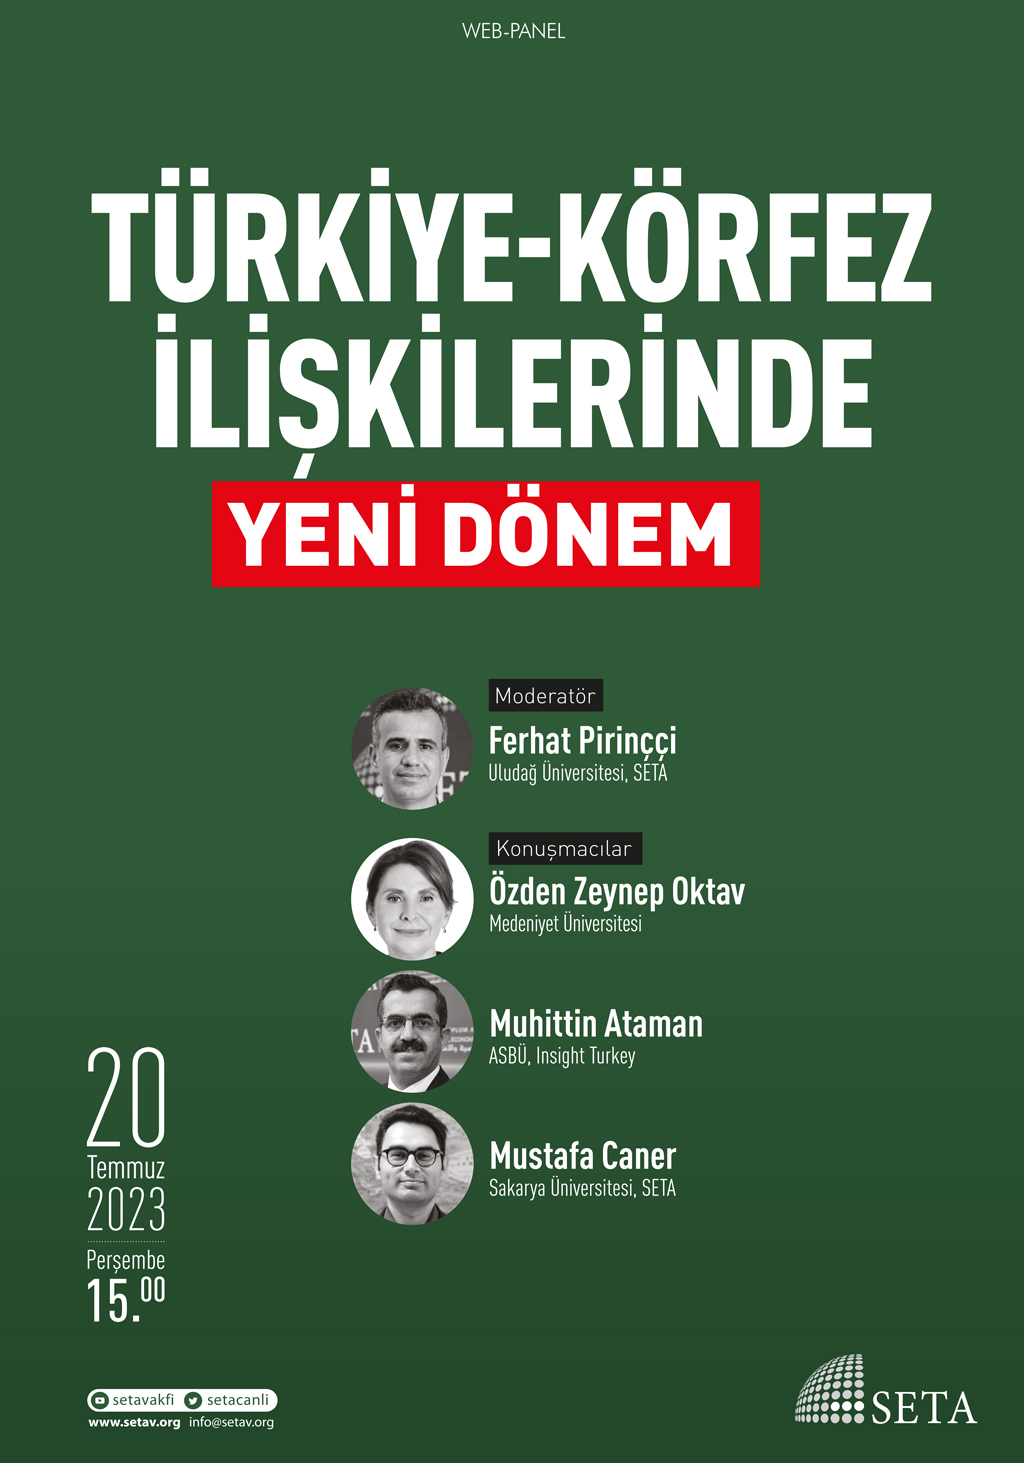 Web Panel: Türkiye-Körfez İlişkilerinde Yeni Dönem